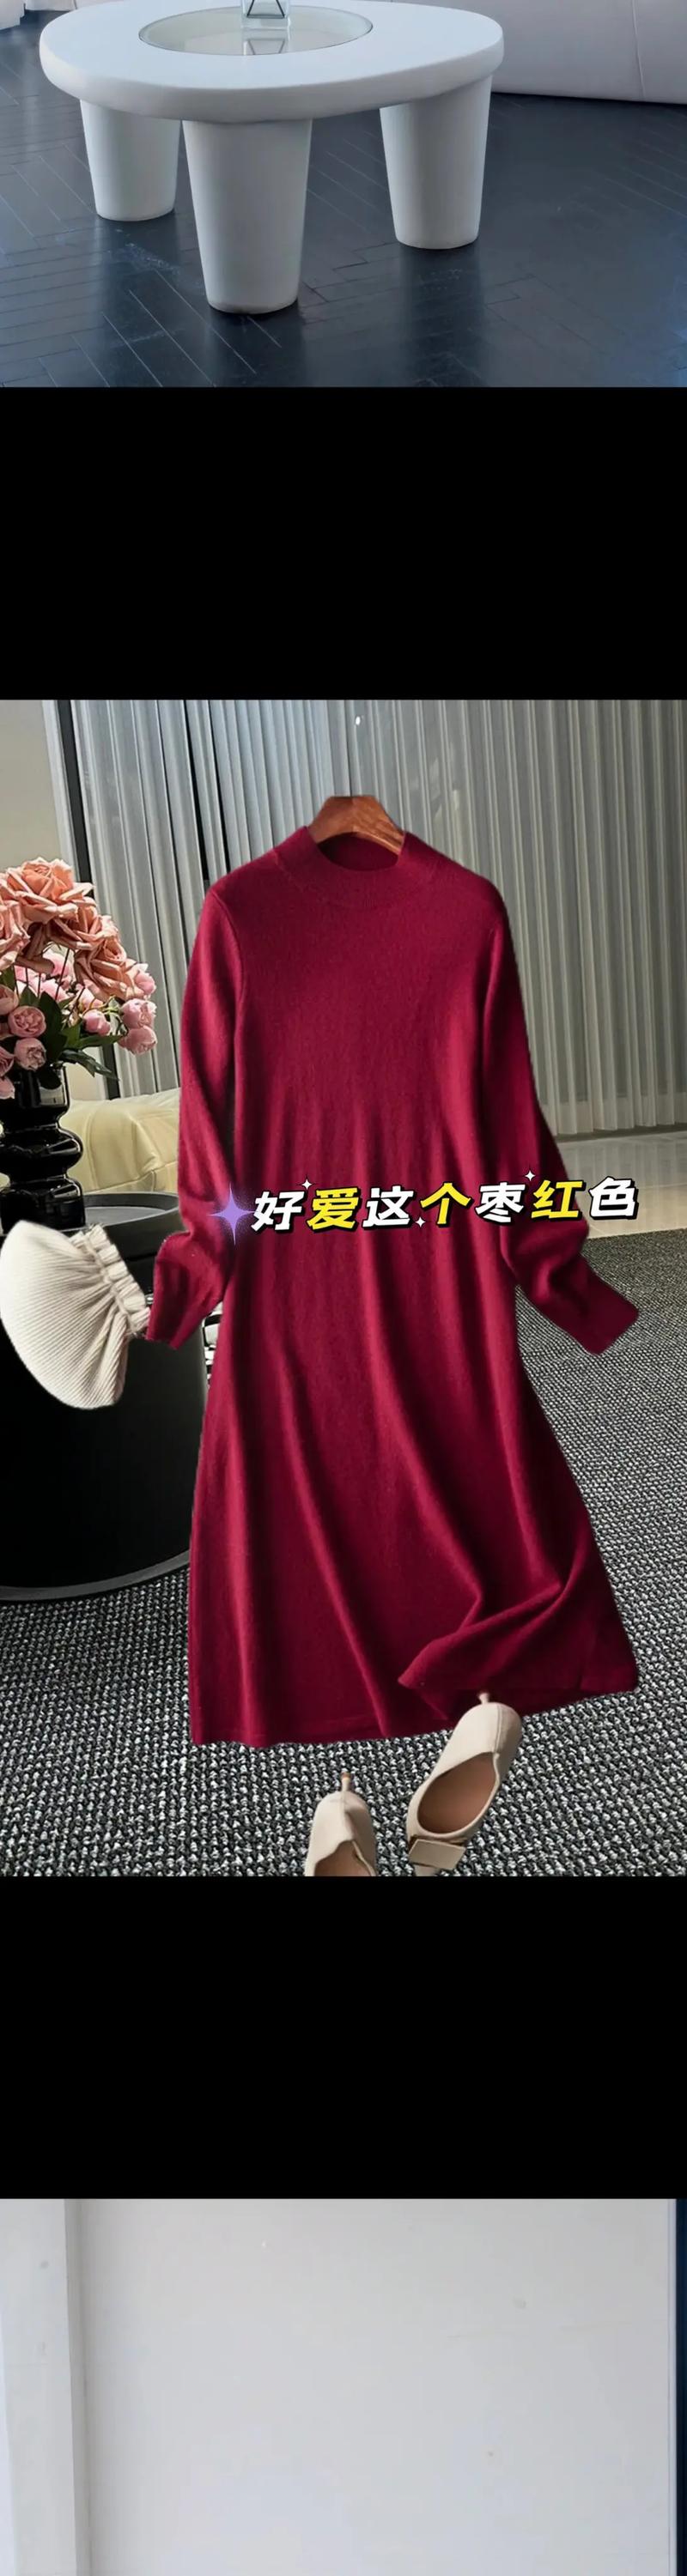 半高领长袖直筒连衣裙女中长款~这款枣红色毛衣连衣裙真的好美啊 - 抖